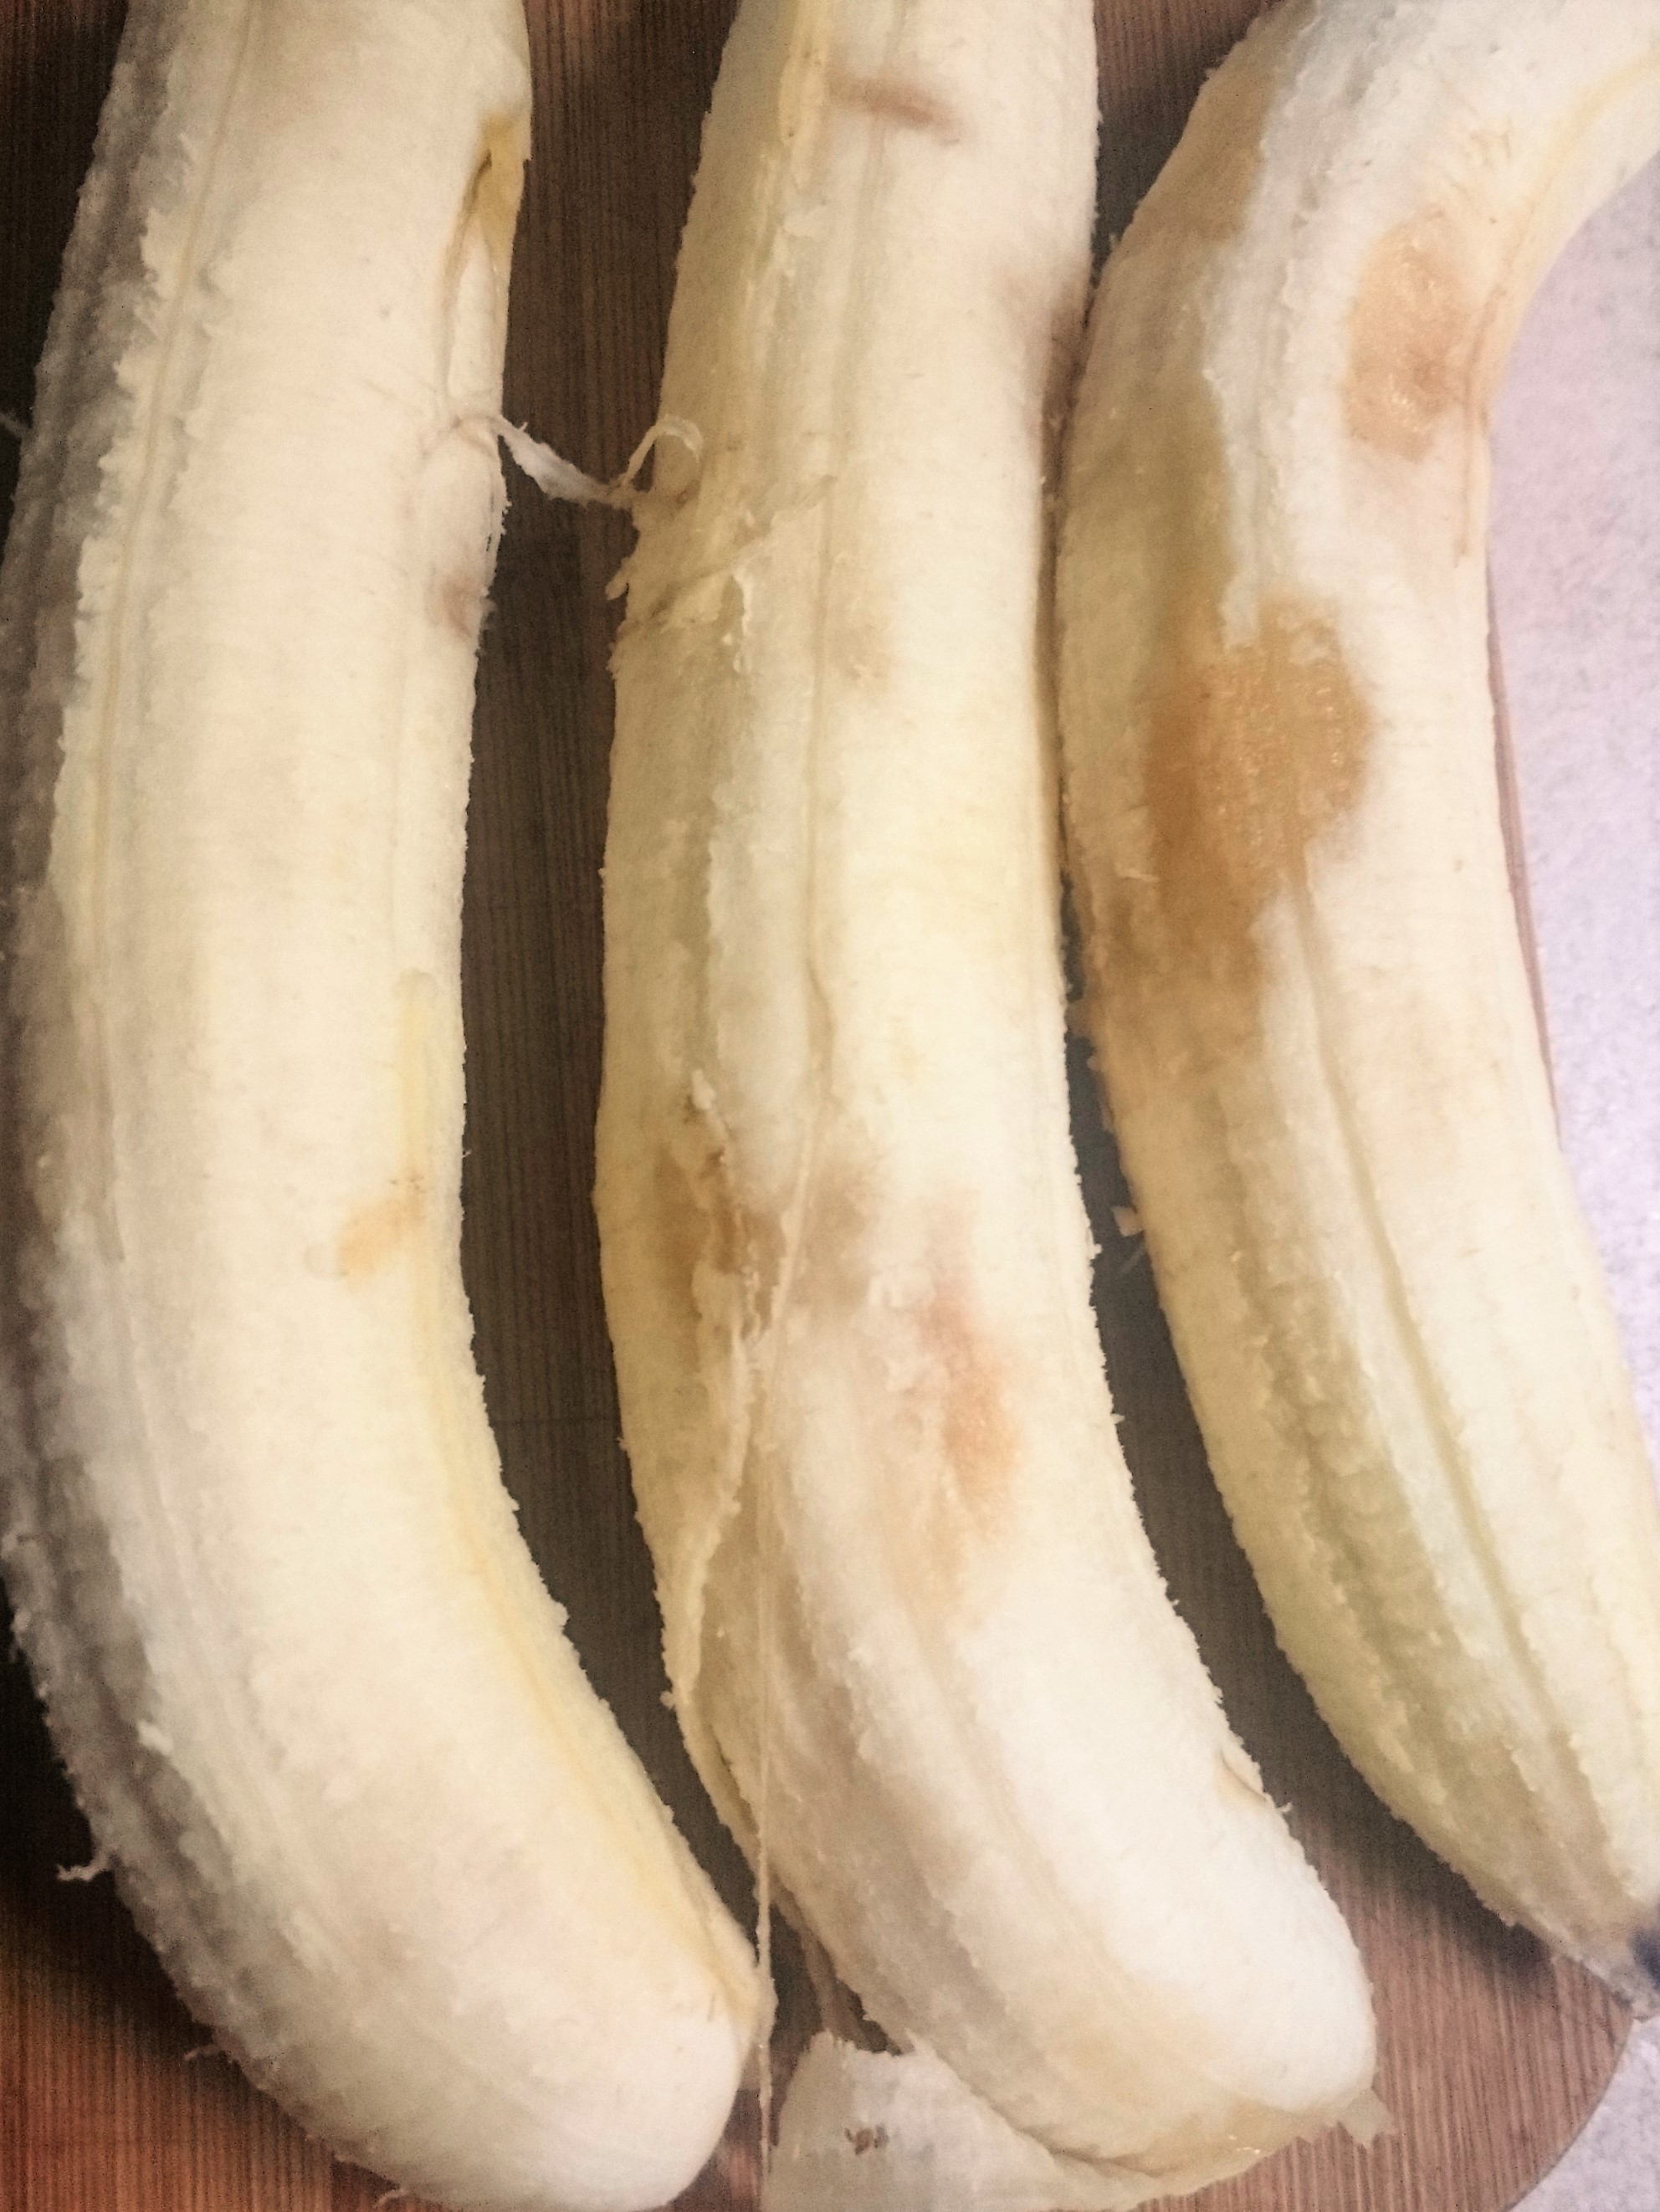 Dulceata proaspata de capsuni cu banane